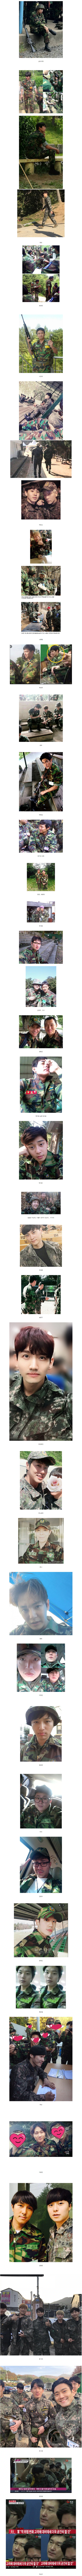 썸네일-예비군 훈련간 연예인들 모습.jpg-이미지